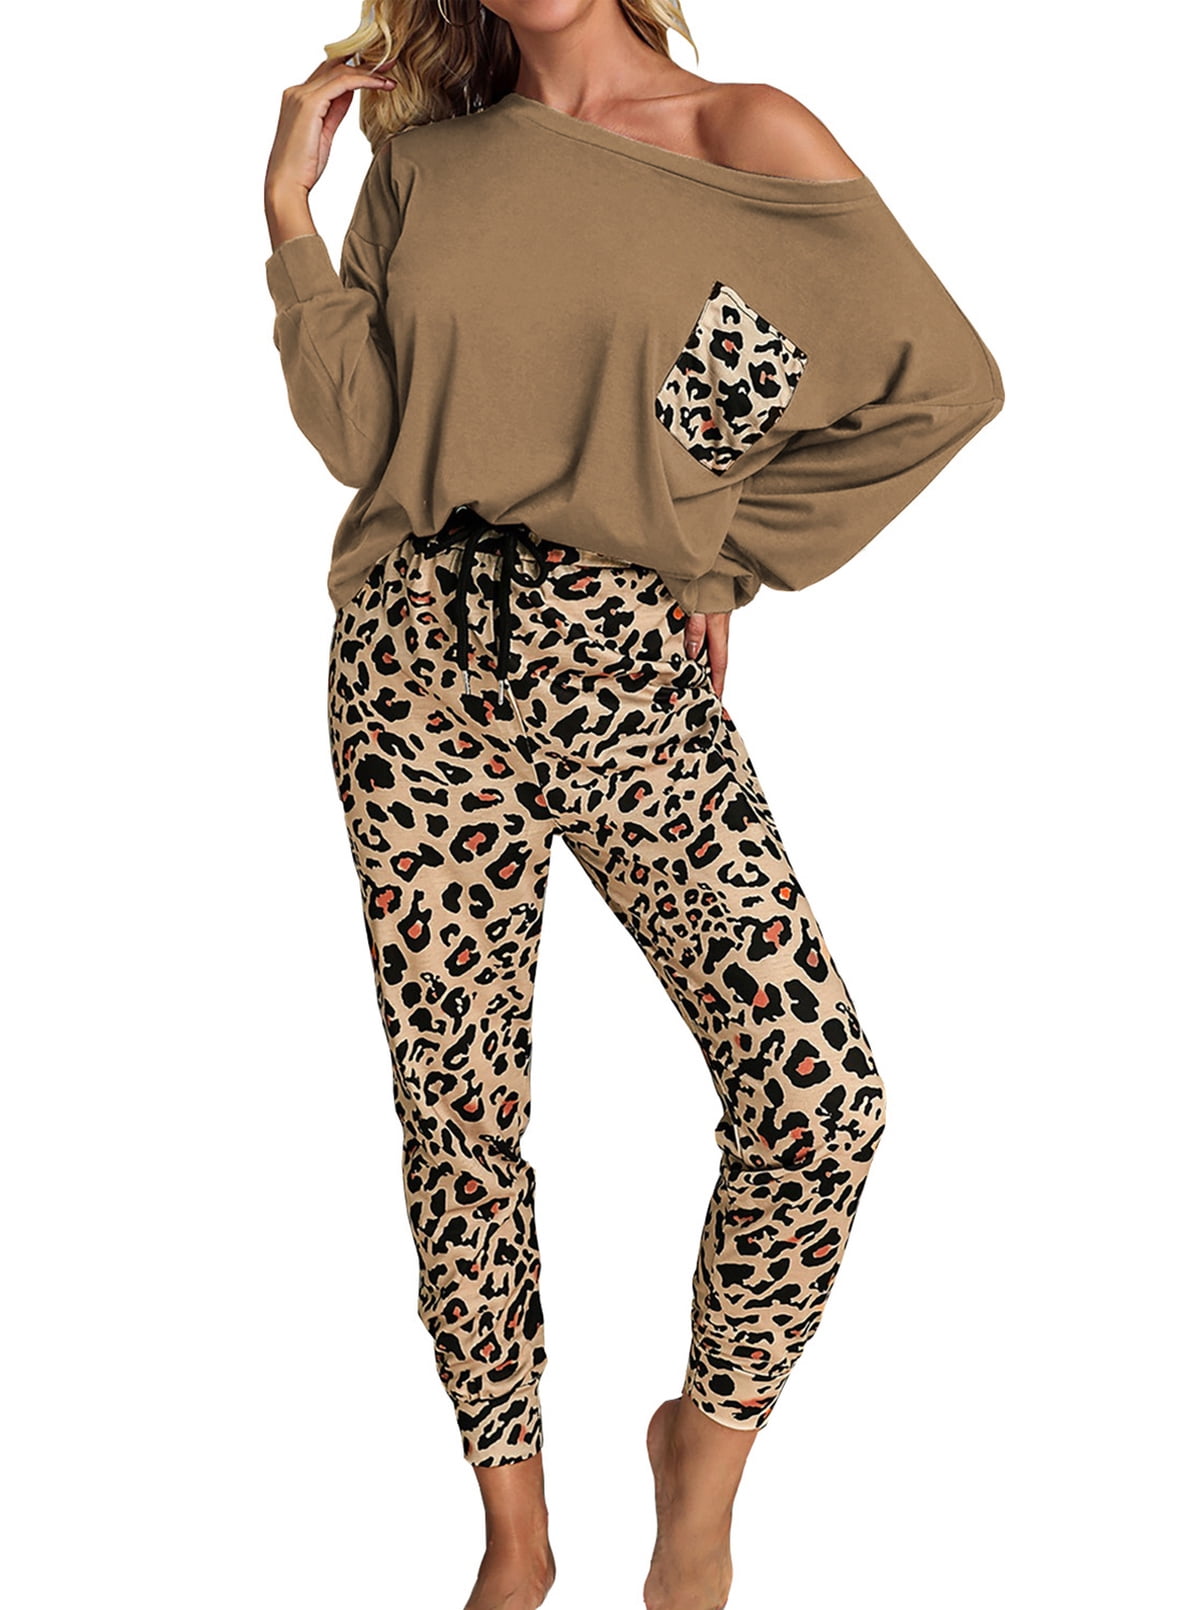 lounge Set shorts Animal Print Lounge Set- Leopard Print Kleding Dameskleding Pyjamas & Badjassen Pyjamashorts & Pyjamabroeken Shorts Comfy 2pc-Set Soft Loungewear Cheetah Print,Lounge Set Womens 